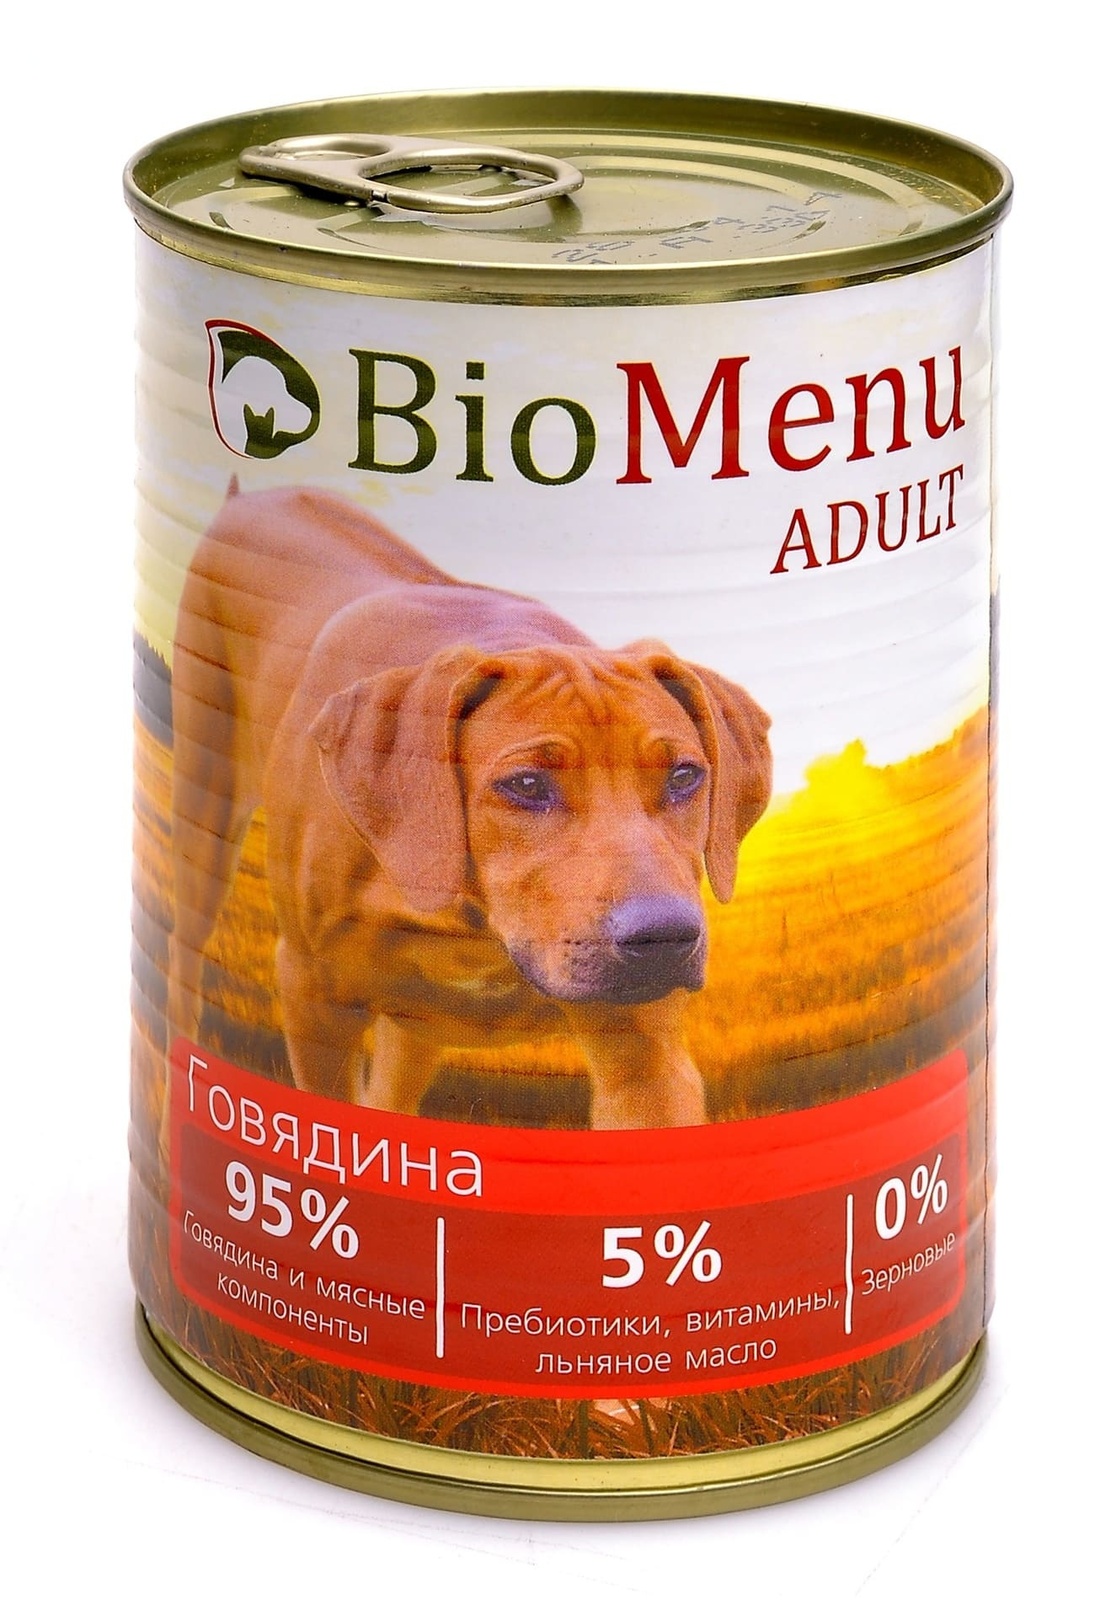 BioMenu BioMenu консервы для собак с говядиной (410 г) biomenu biomenu консервы для собак цыпленок с ананасом 410 г